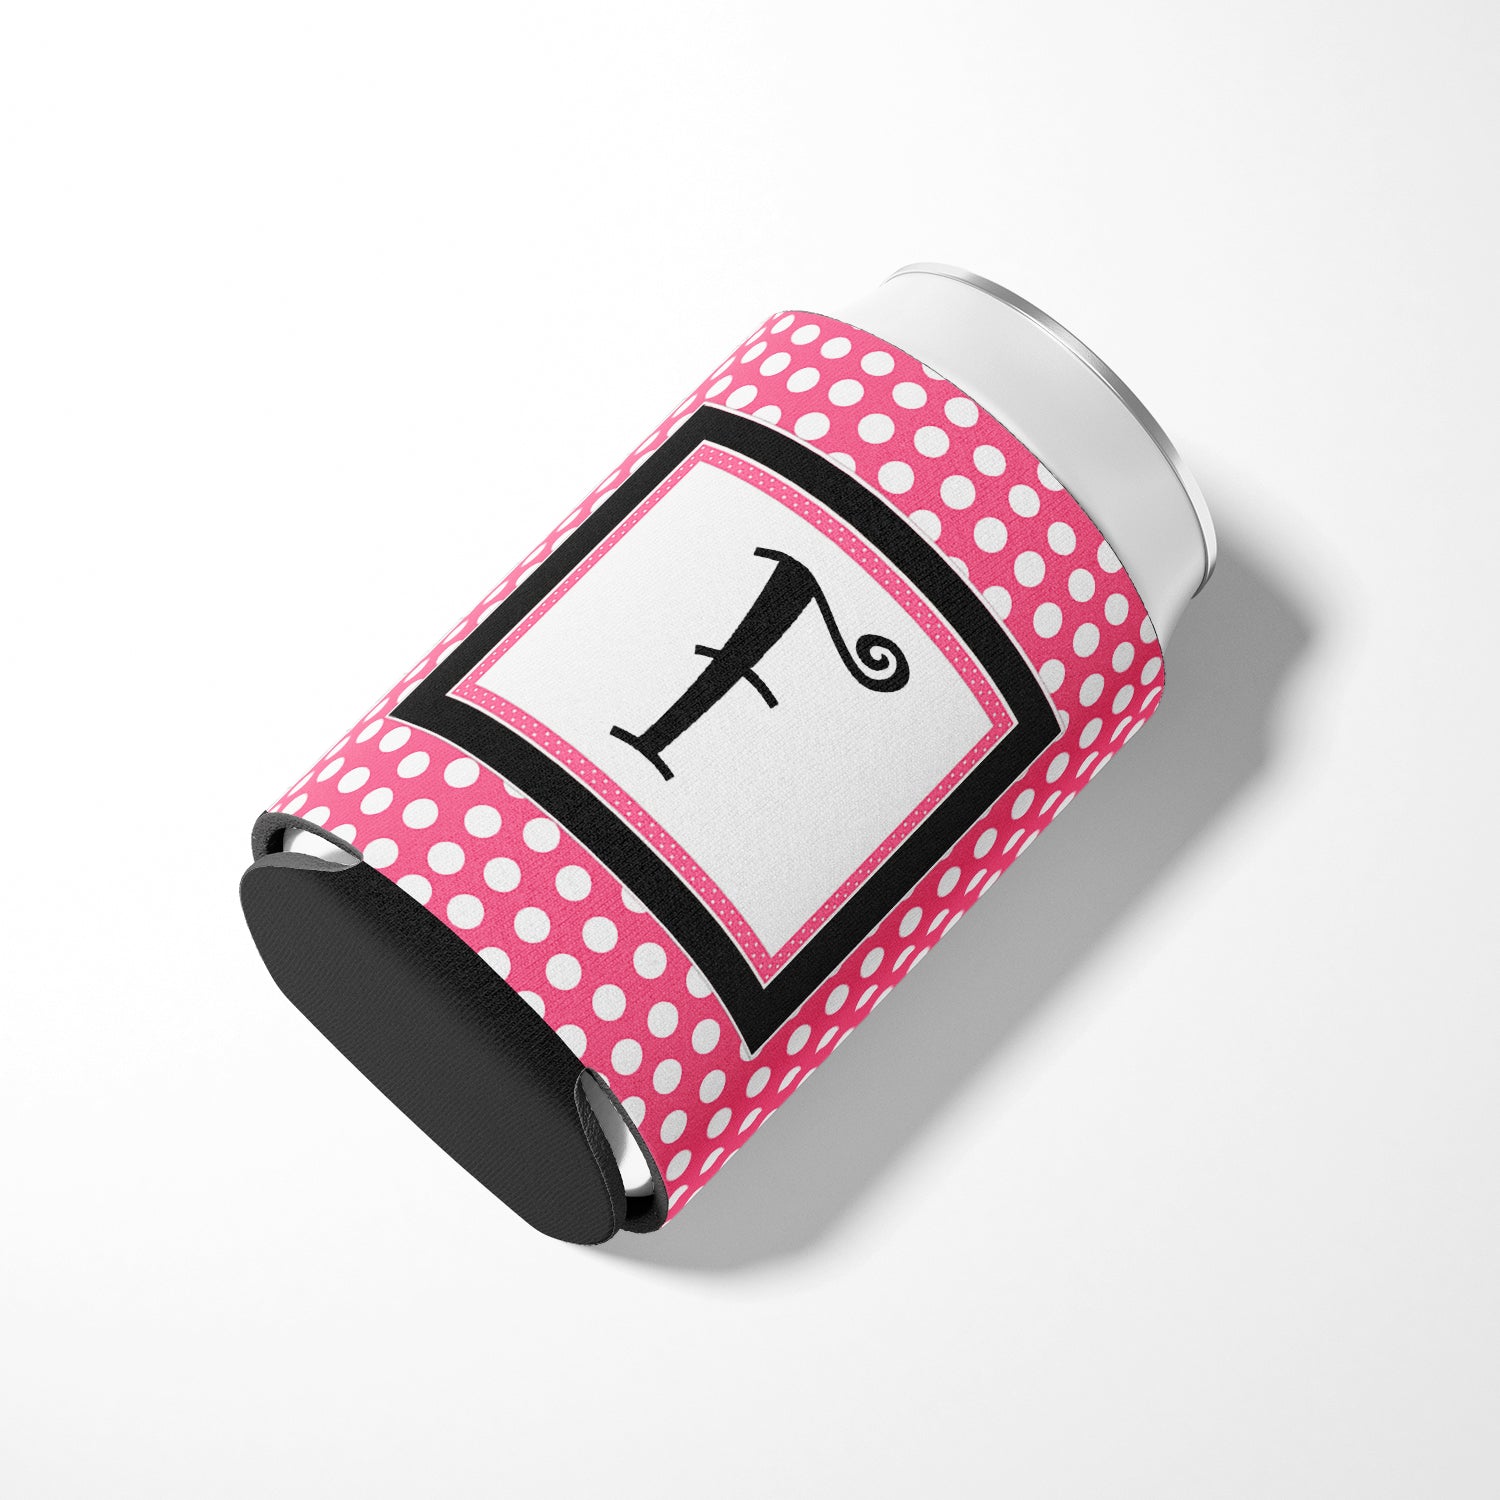 Letter F Initial Monogram - Pink Black Polka Dots Can or Bottle Beverage Insulator Hugger.